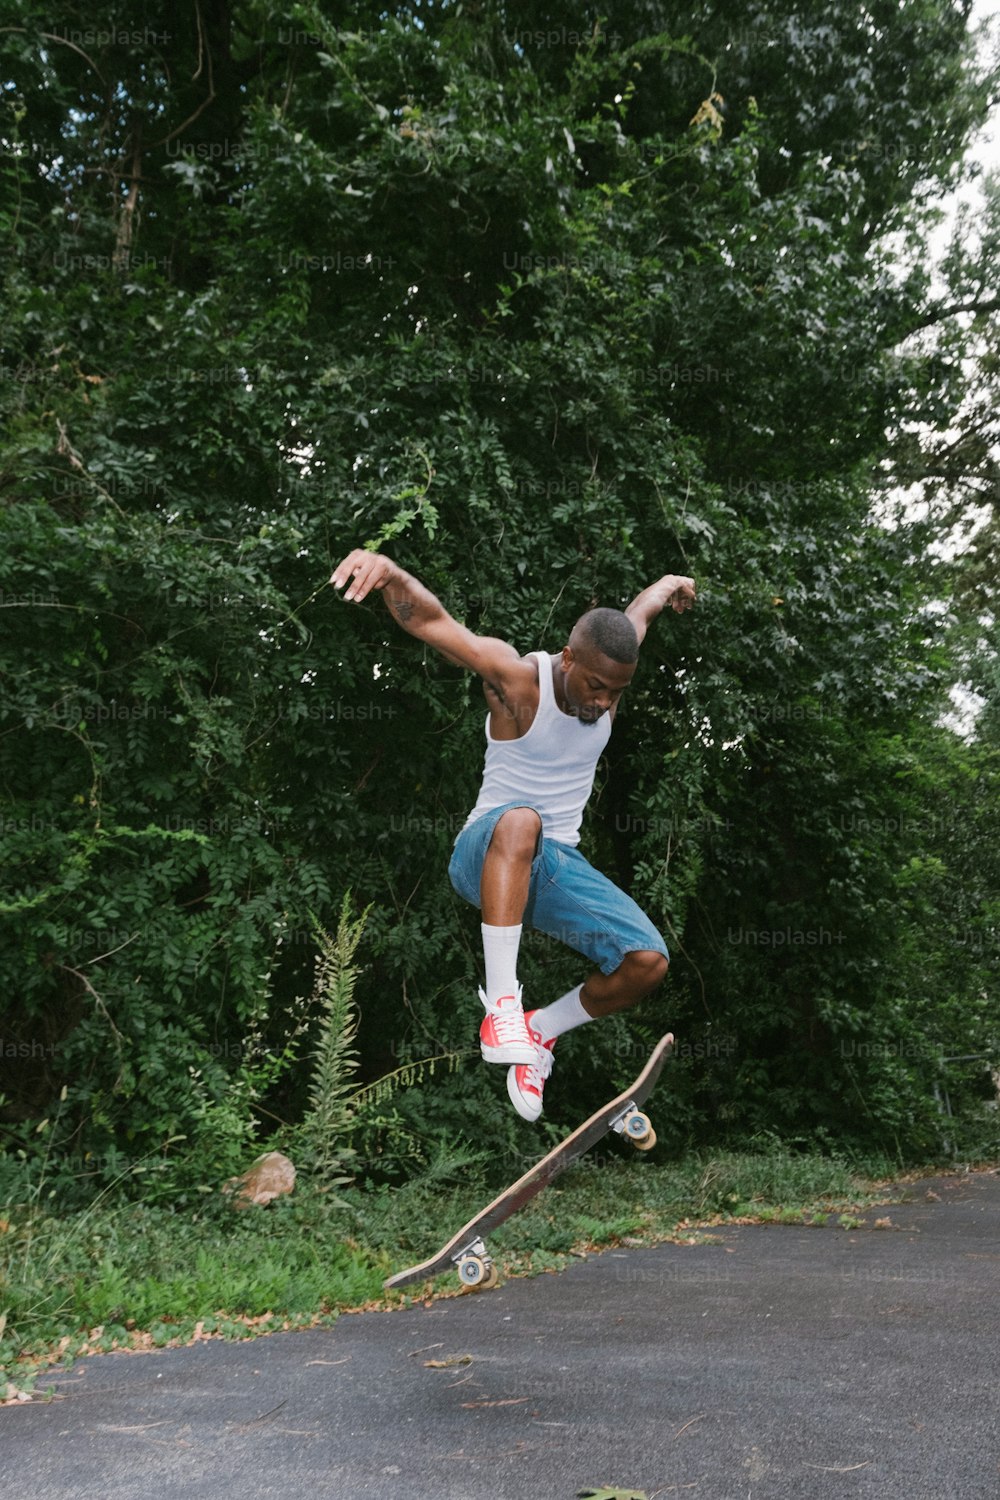 Ein Mann macht einen Trick auf einem Skateboard